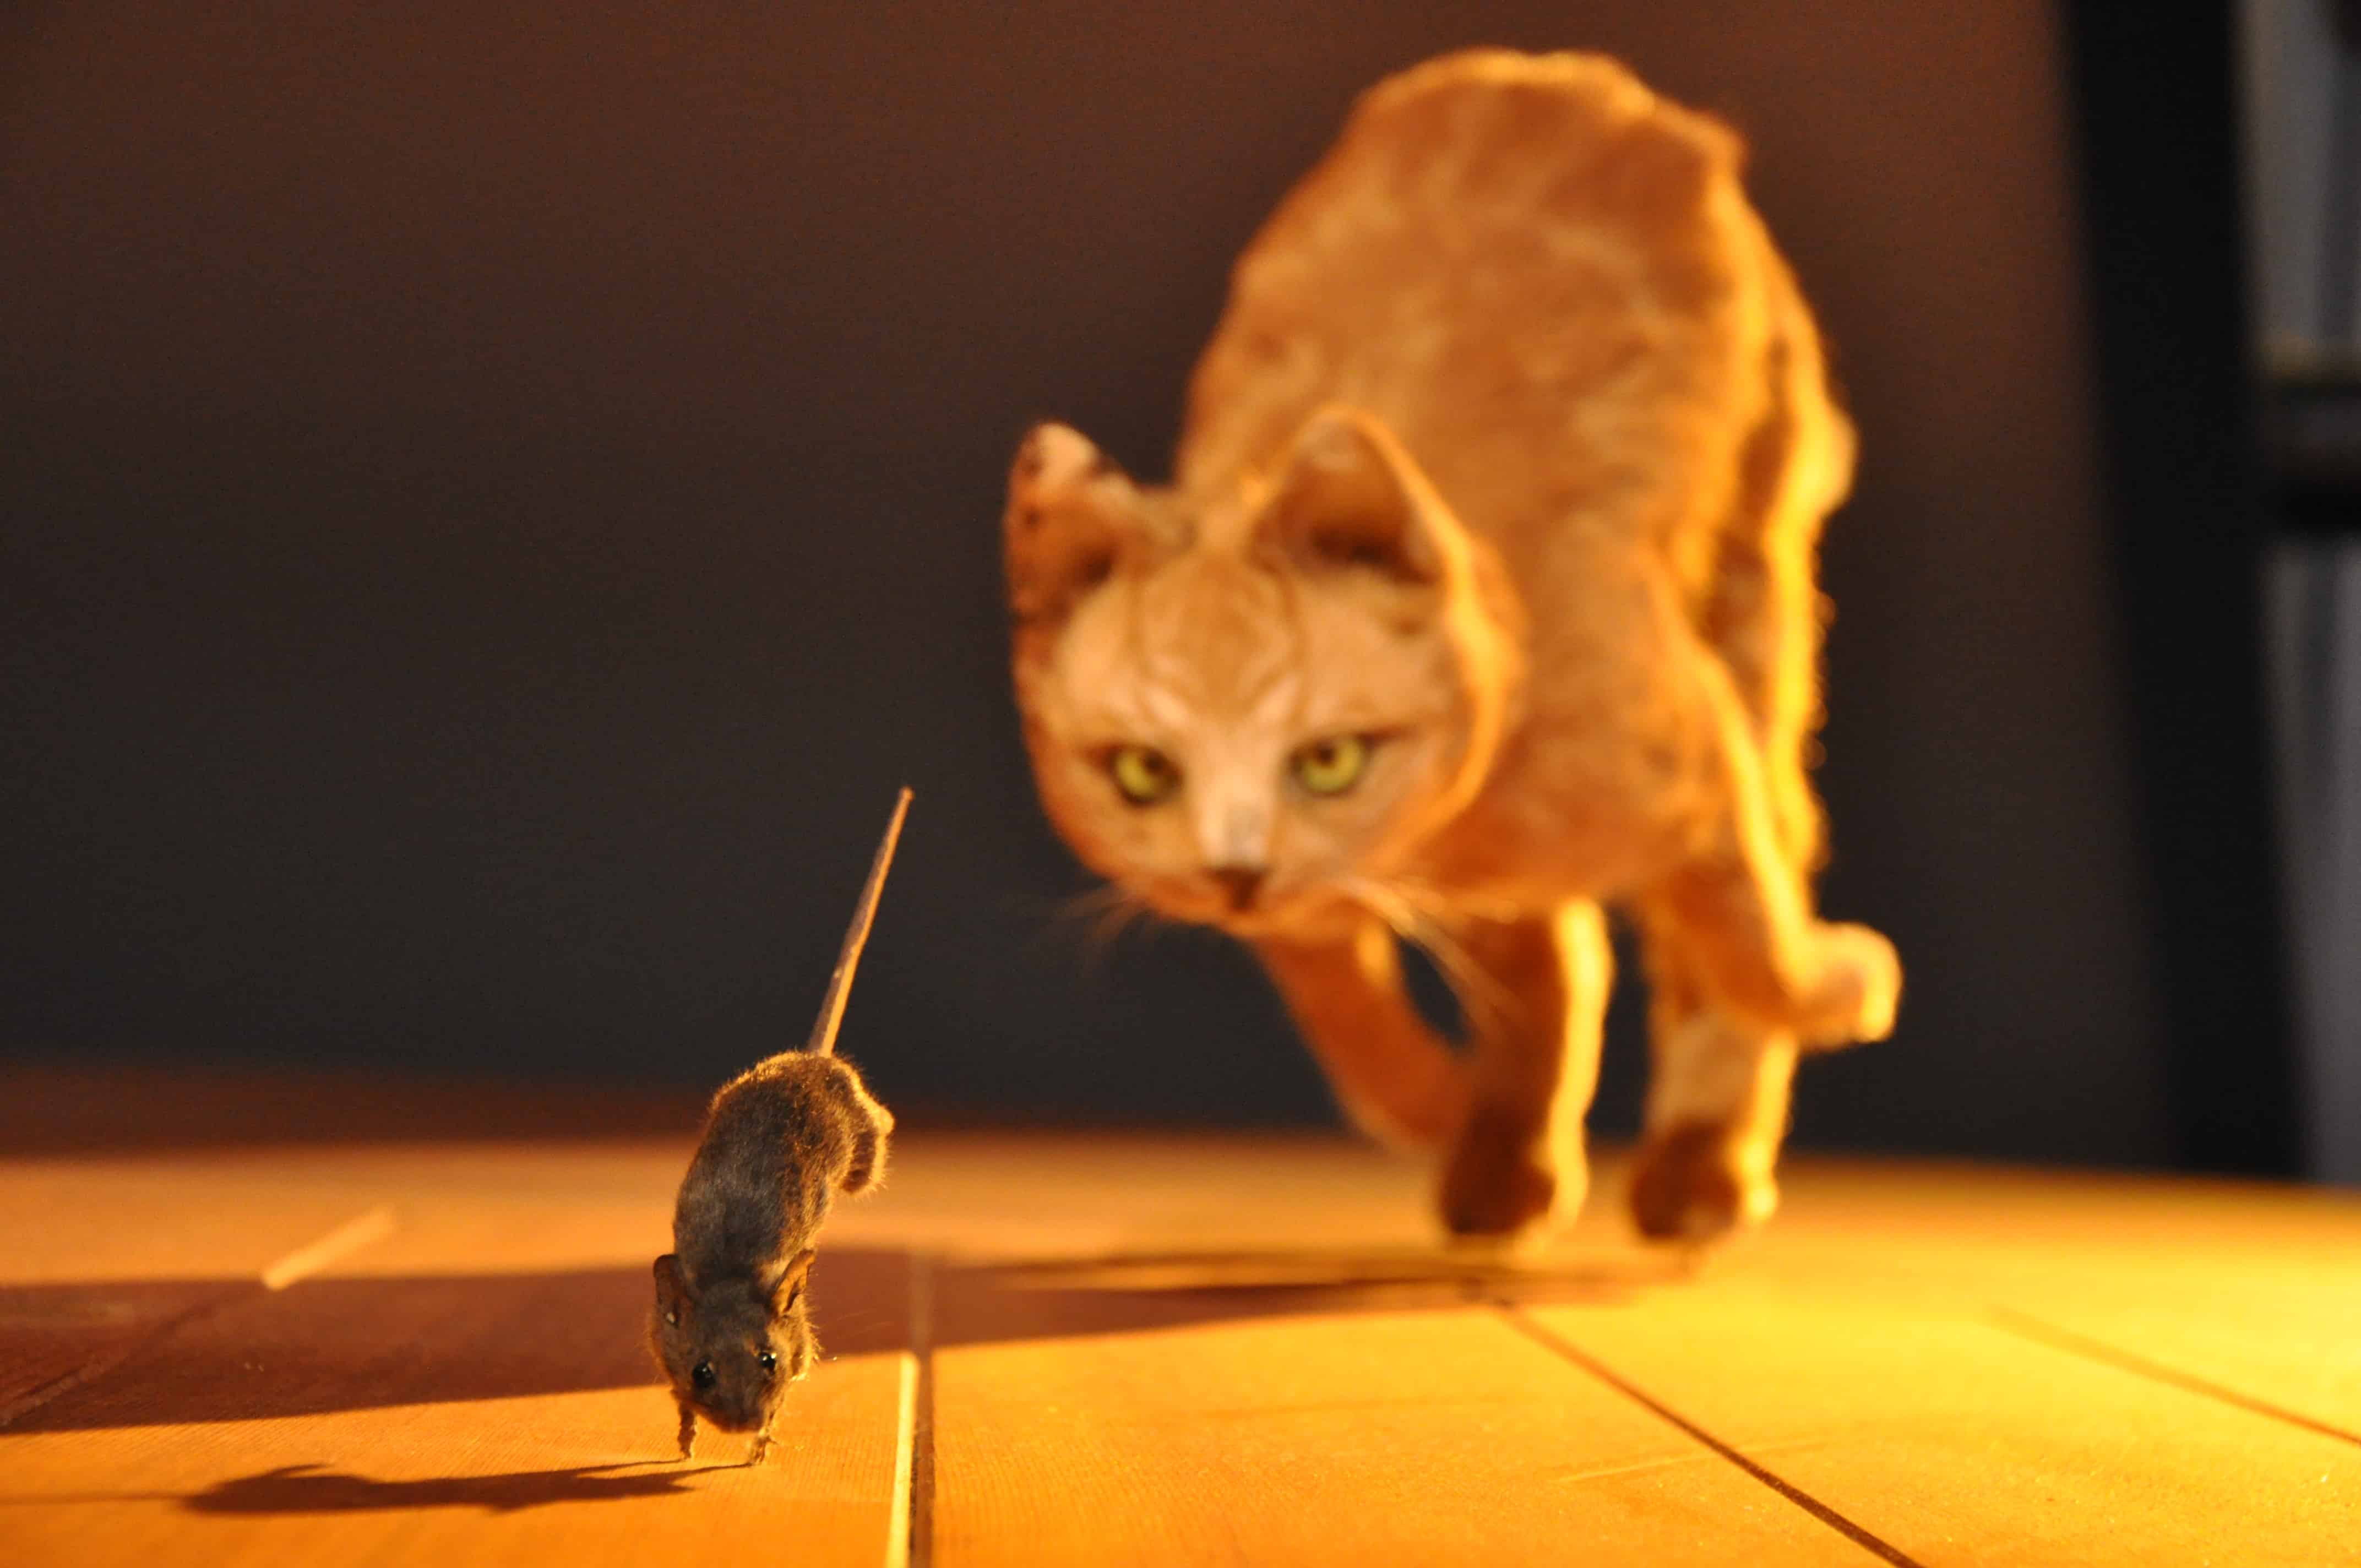 Котенок ловит мышей